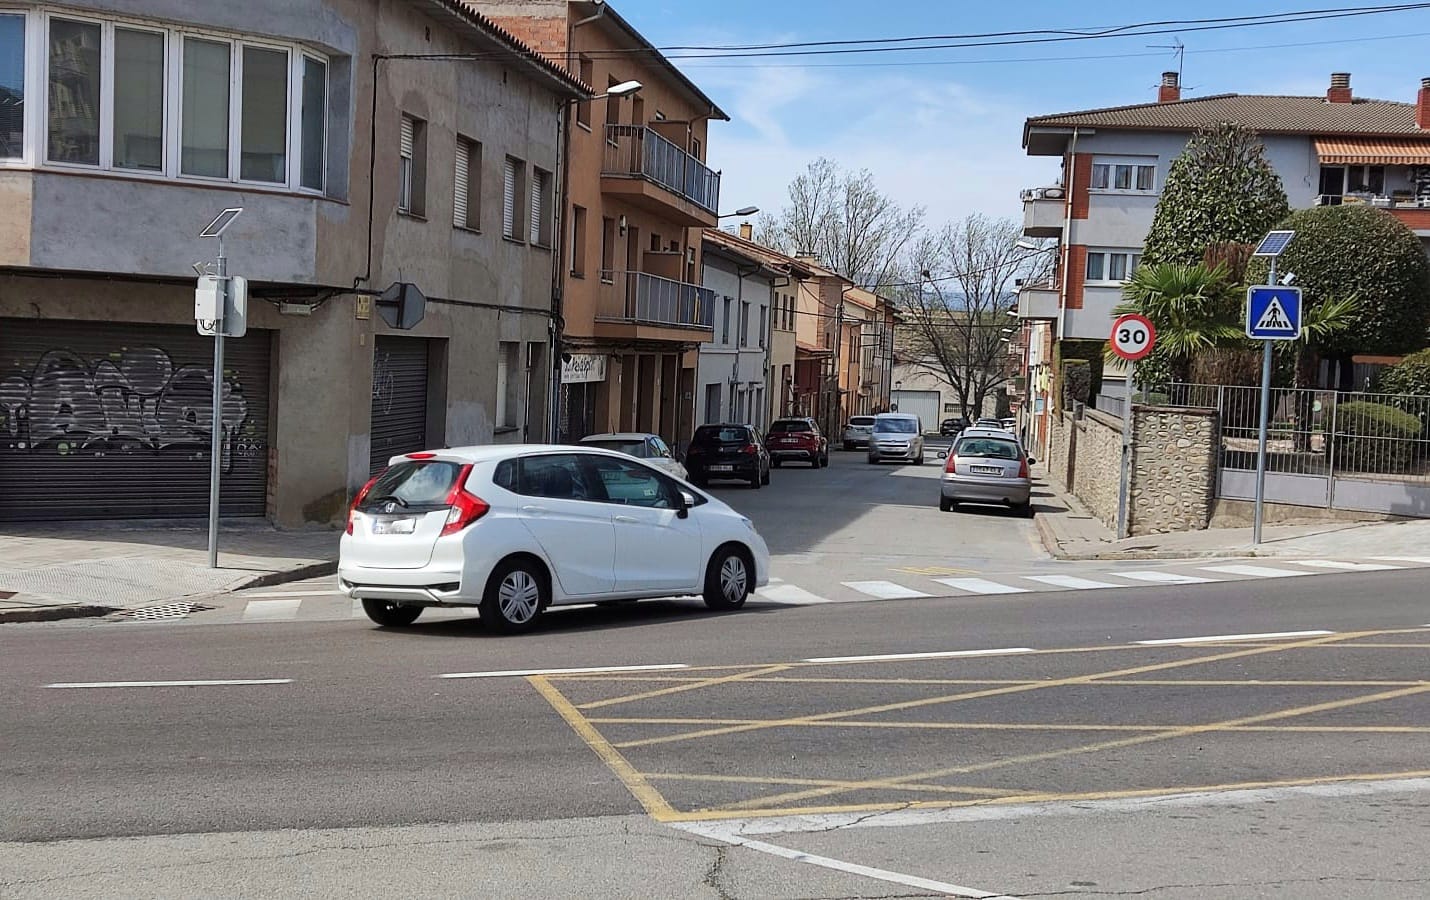  A l'inici del carrer Sant Antoni Maria Claret s'han instal·lat senyals lumínics.